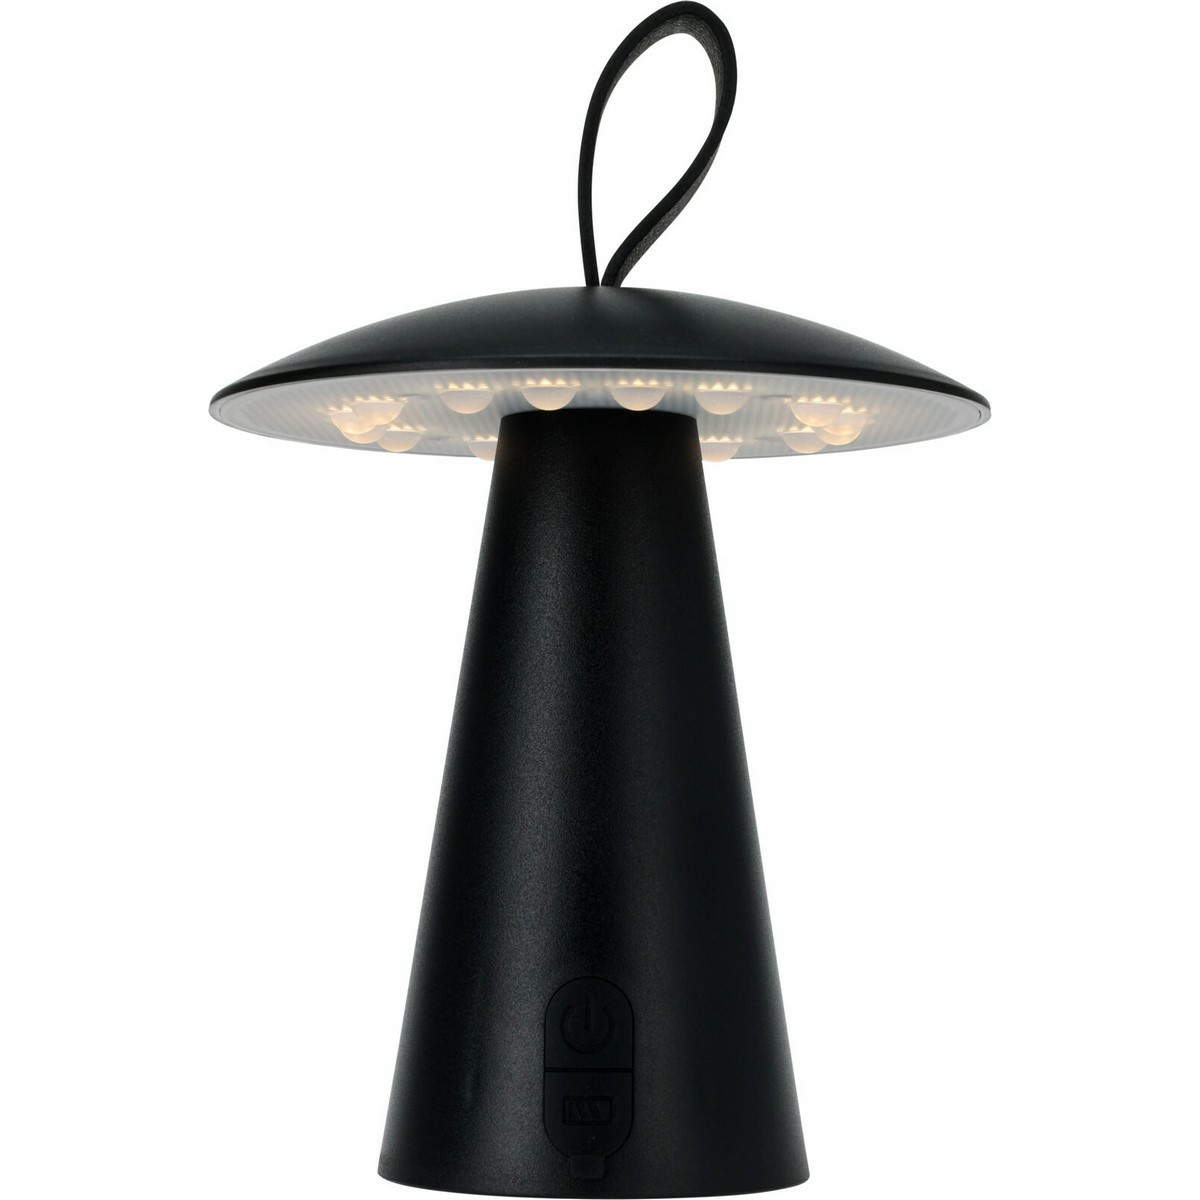 Stolní venkovní přenosná LED lampa Boise, černá, USB, 15 x 17 cm, plast